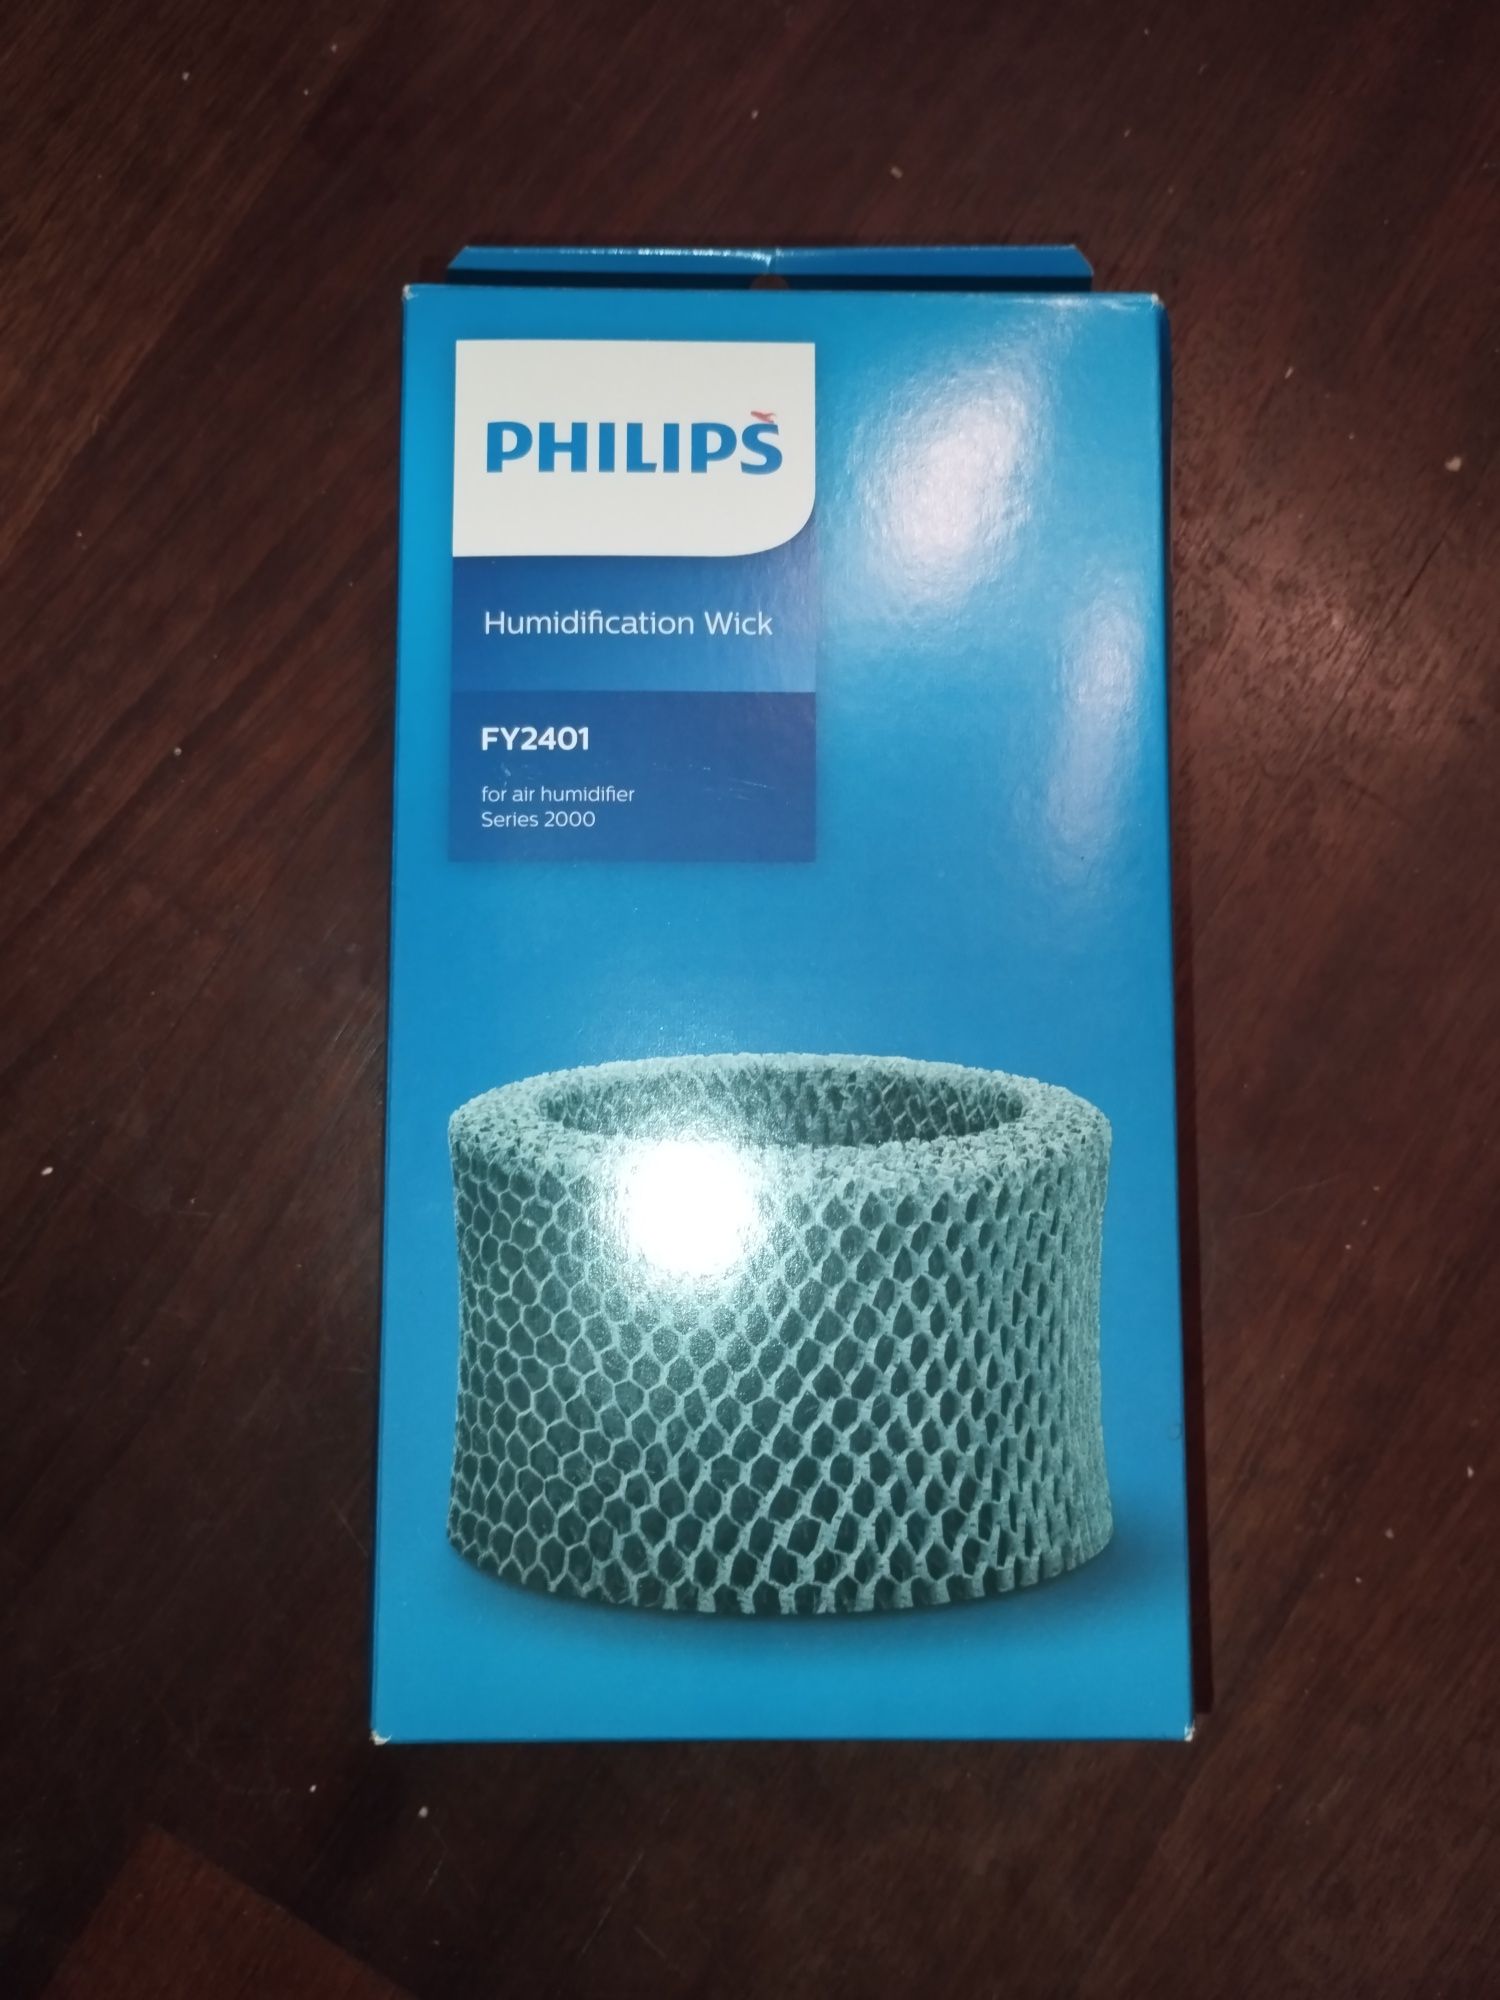 Nawilżacz ewaporacyjny Philips HU4813 higrostat regulacja wilgotności